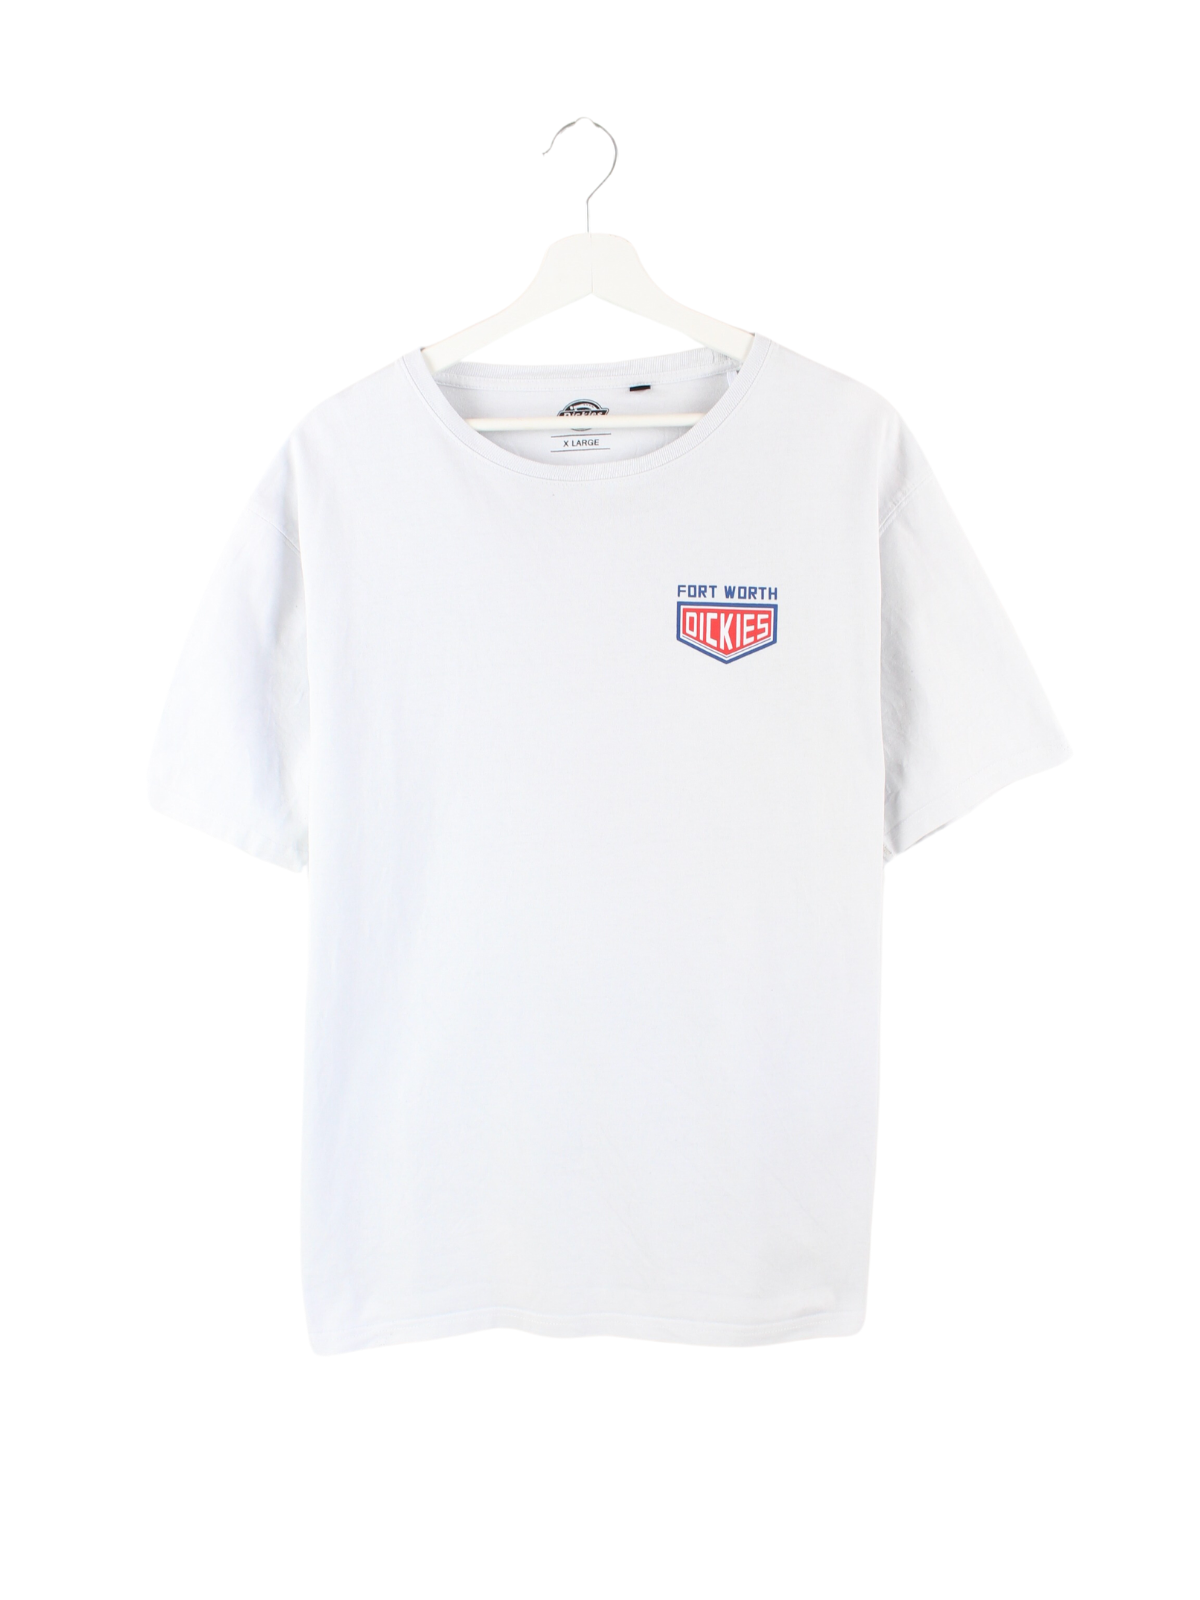 Dickies Print T-Shirt Grau XL